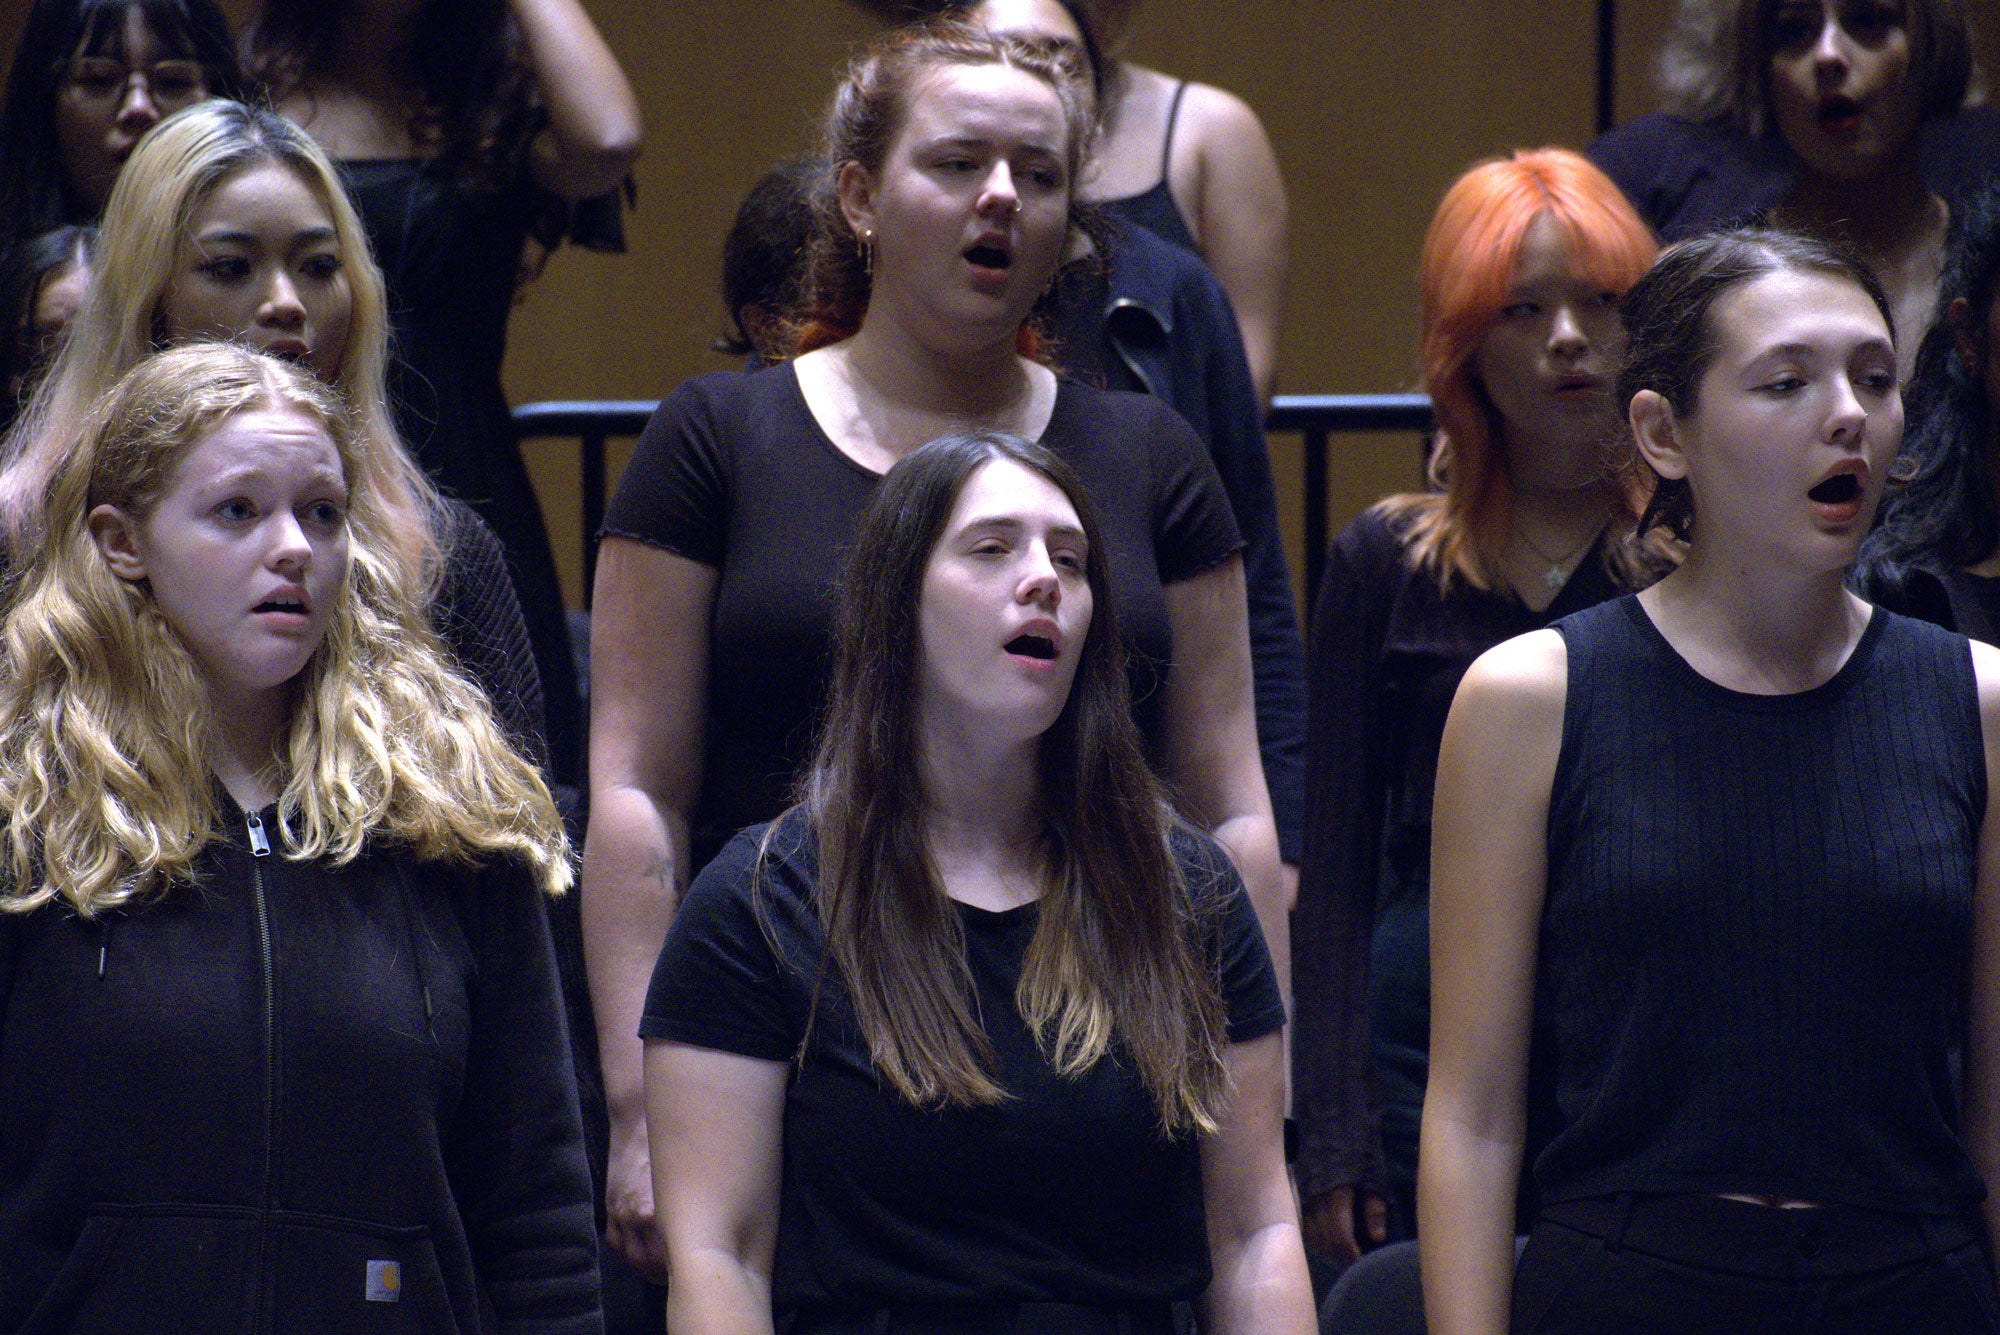 Women in chorus singing